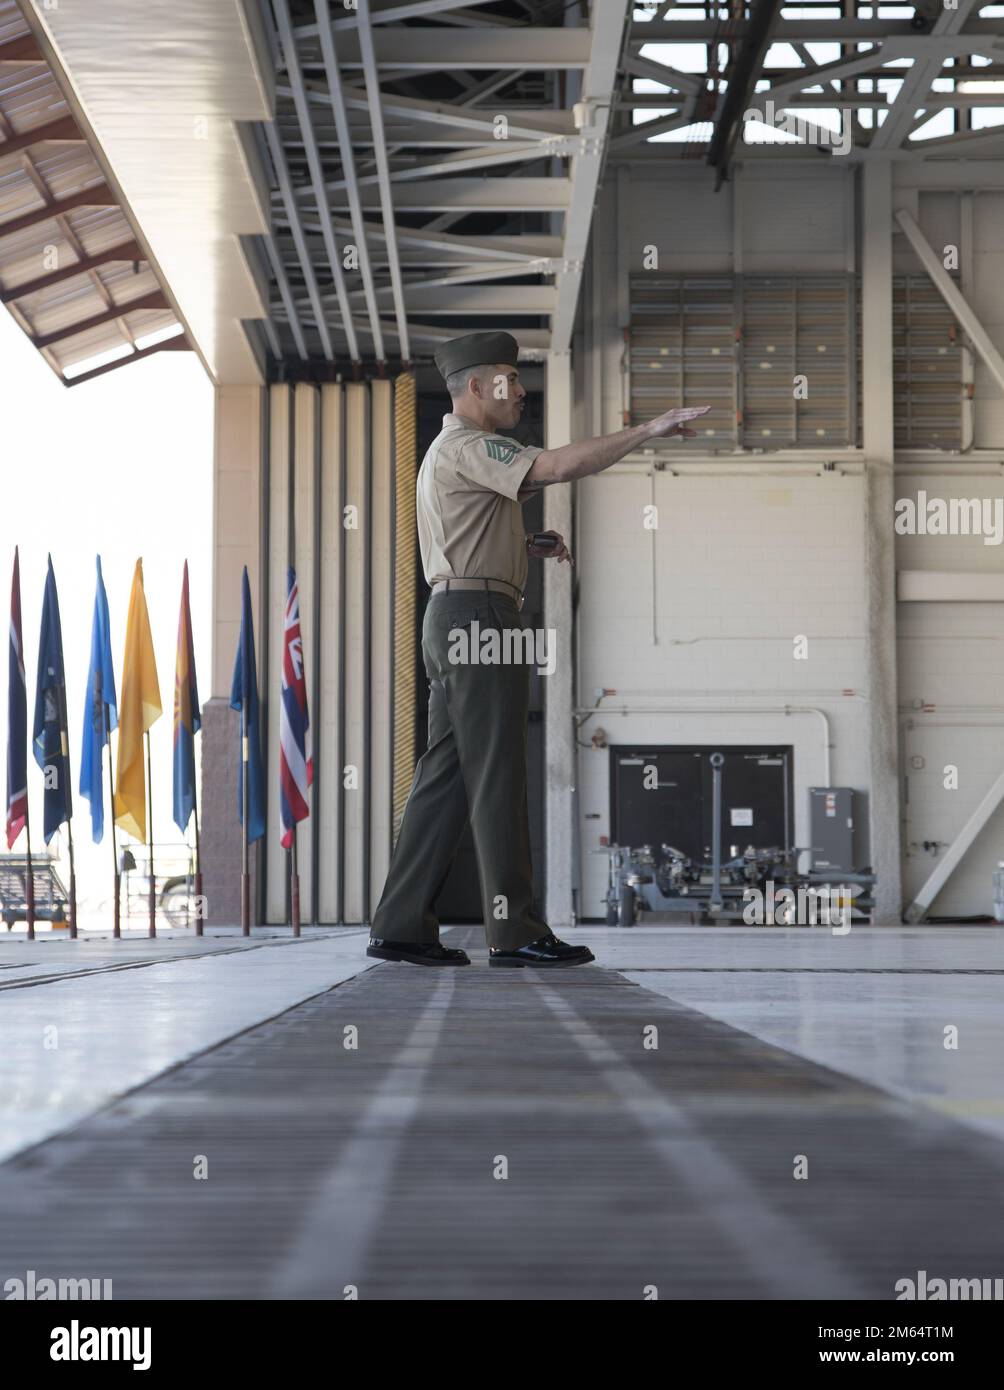 EE.UU El sargento de artillería del Cuerpo de Infantería de Marina Julian Cubillos, jefe de control de calidad del Escuadrón 1 de Pruebas Operativas y Evaluación de Infantería de Marina (VMX-1), habla a la audiencia durante su ceremonia de retiro en la Estación Aérea del Cuerpo de Infantería de Marina de Yuma, Arizona, el 1 de abril de 2022. Cubillos se retiró después de 20 años de servicio en el Cuerpo de Infantería de Marina. Foto de stock